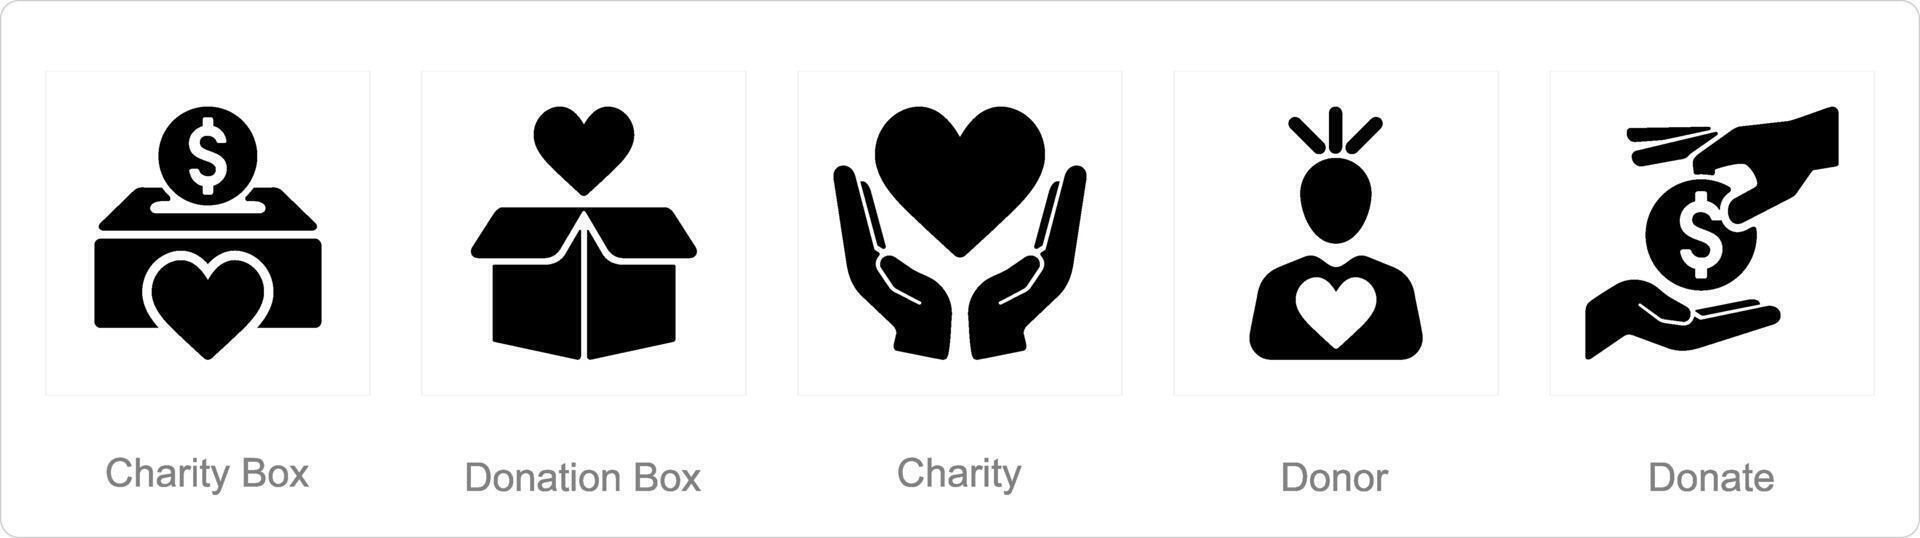 un' impostato di 5 beneficenza e donazione icone come beneficenza scatola, donazione scatola, beneficenza vettore